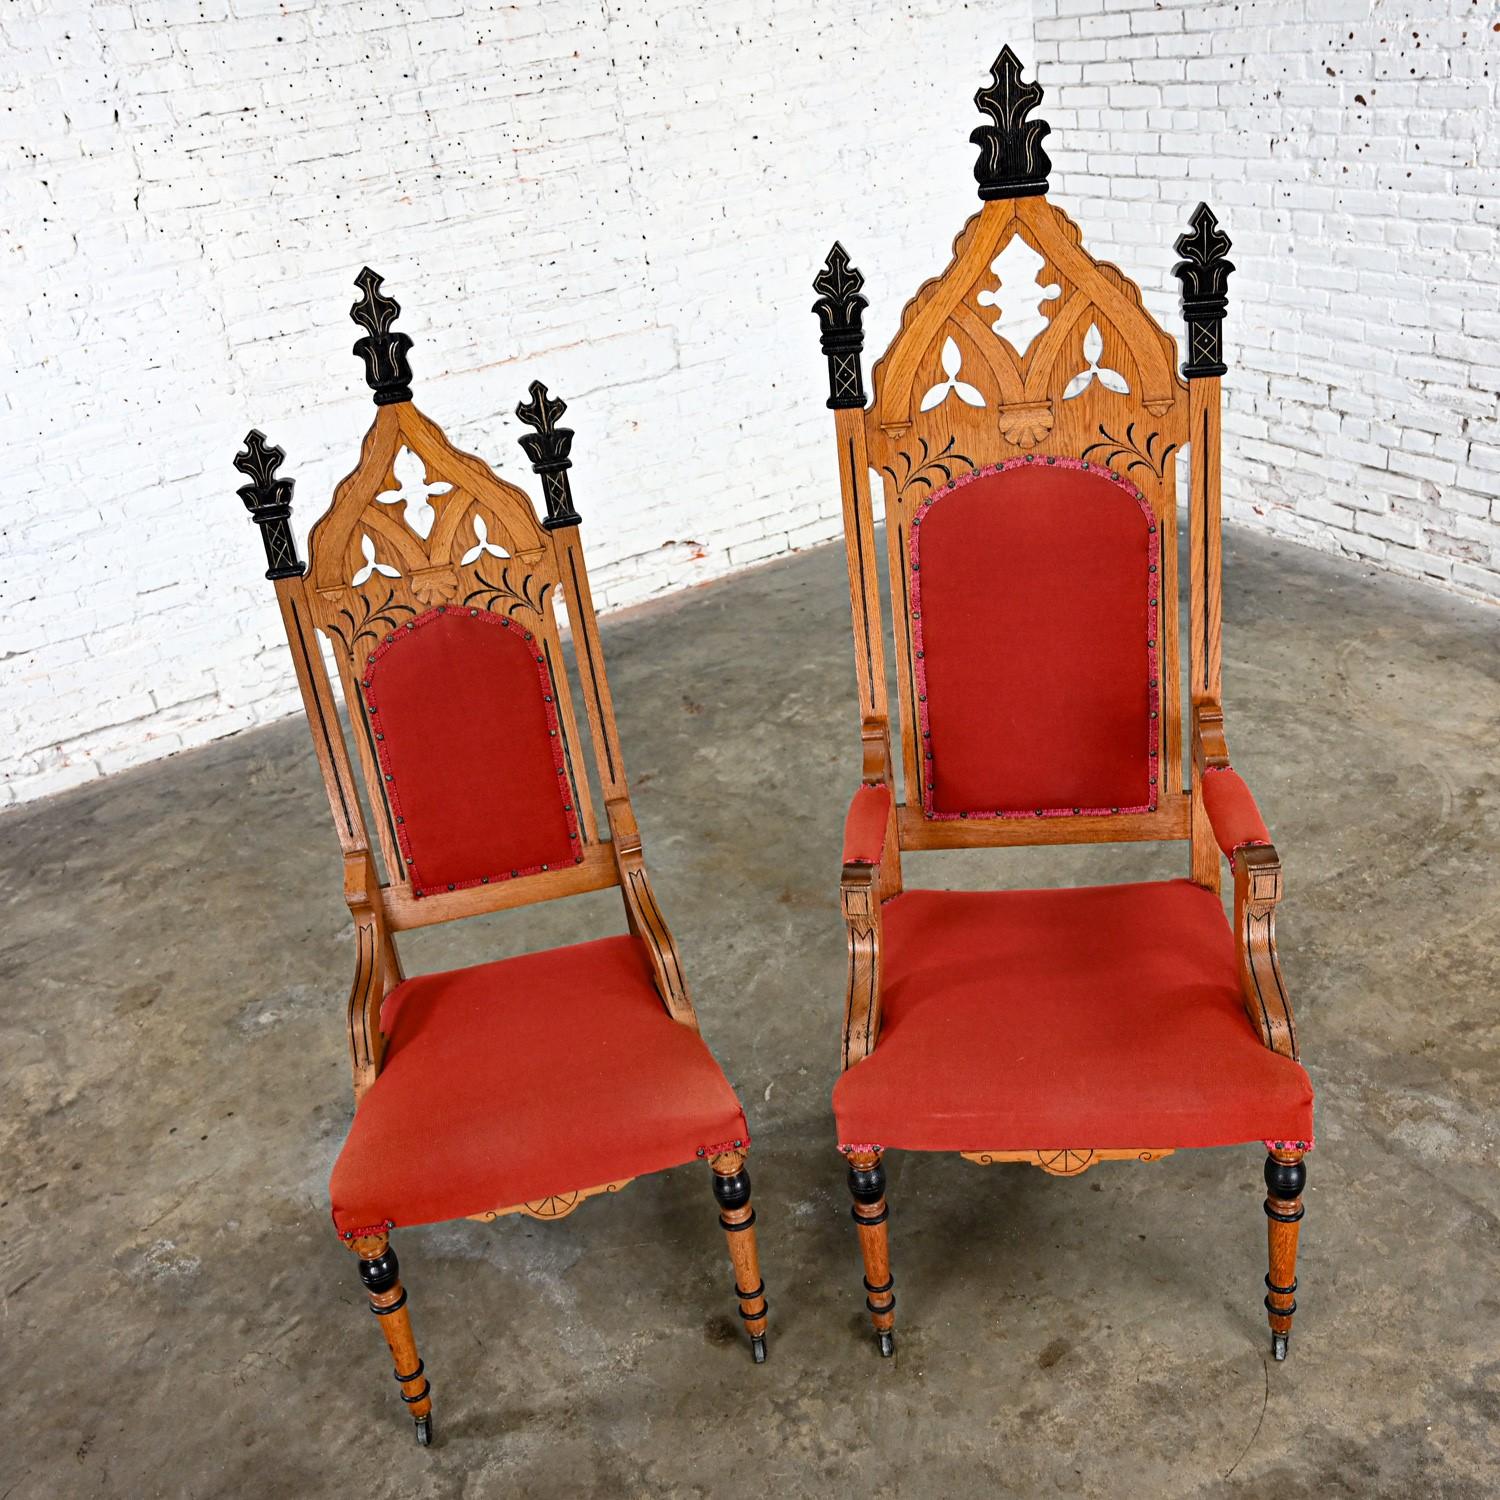 Incroyables chaises de trône ecclésiastiques pour lui et pour elle de la fin du XIXe siècle au début du XXe siècle, de style victorien ou néo-gothique, composées d'une structure en chêne avec des détails noirs et dorés, d'un dossier et d'une assise